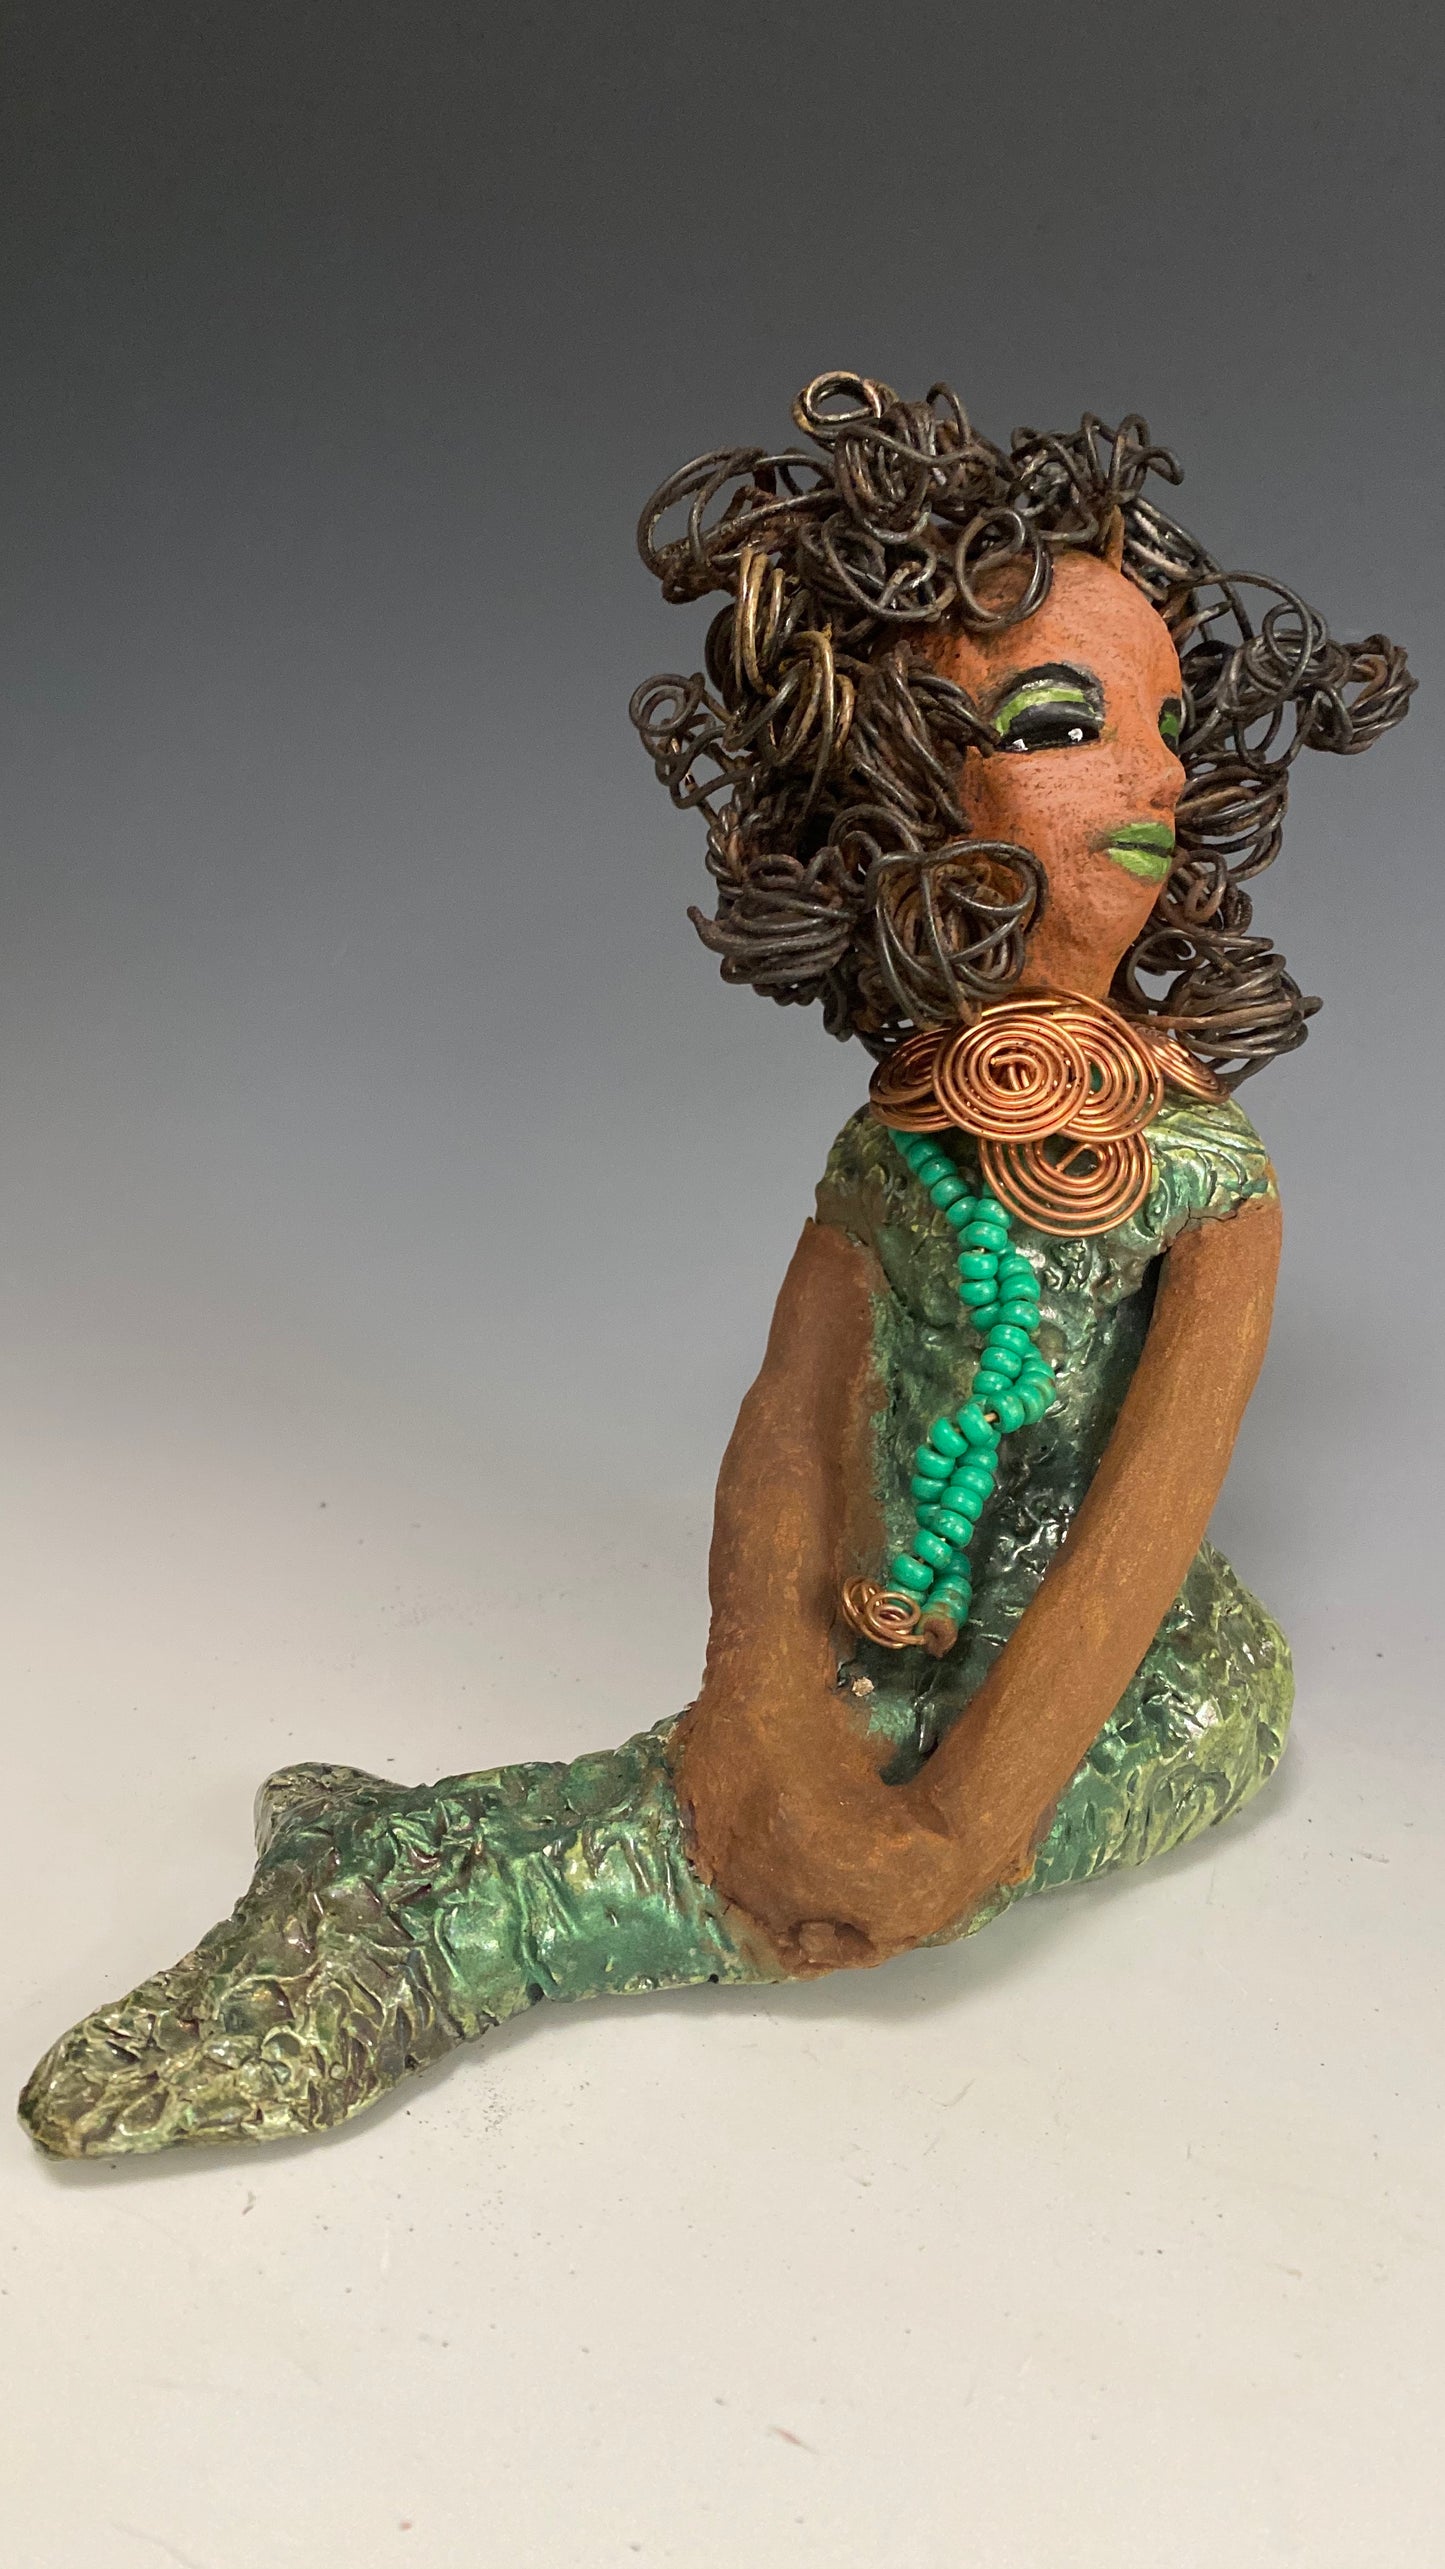 Arsie- The Mermaid